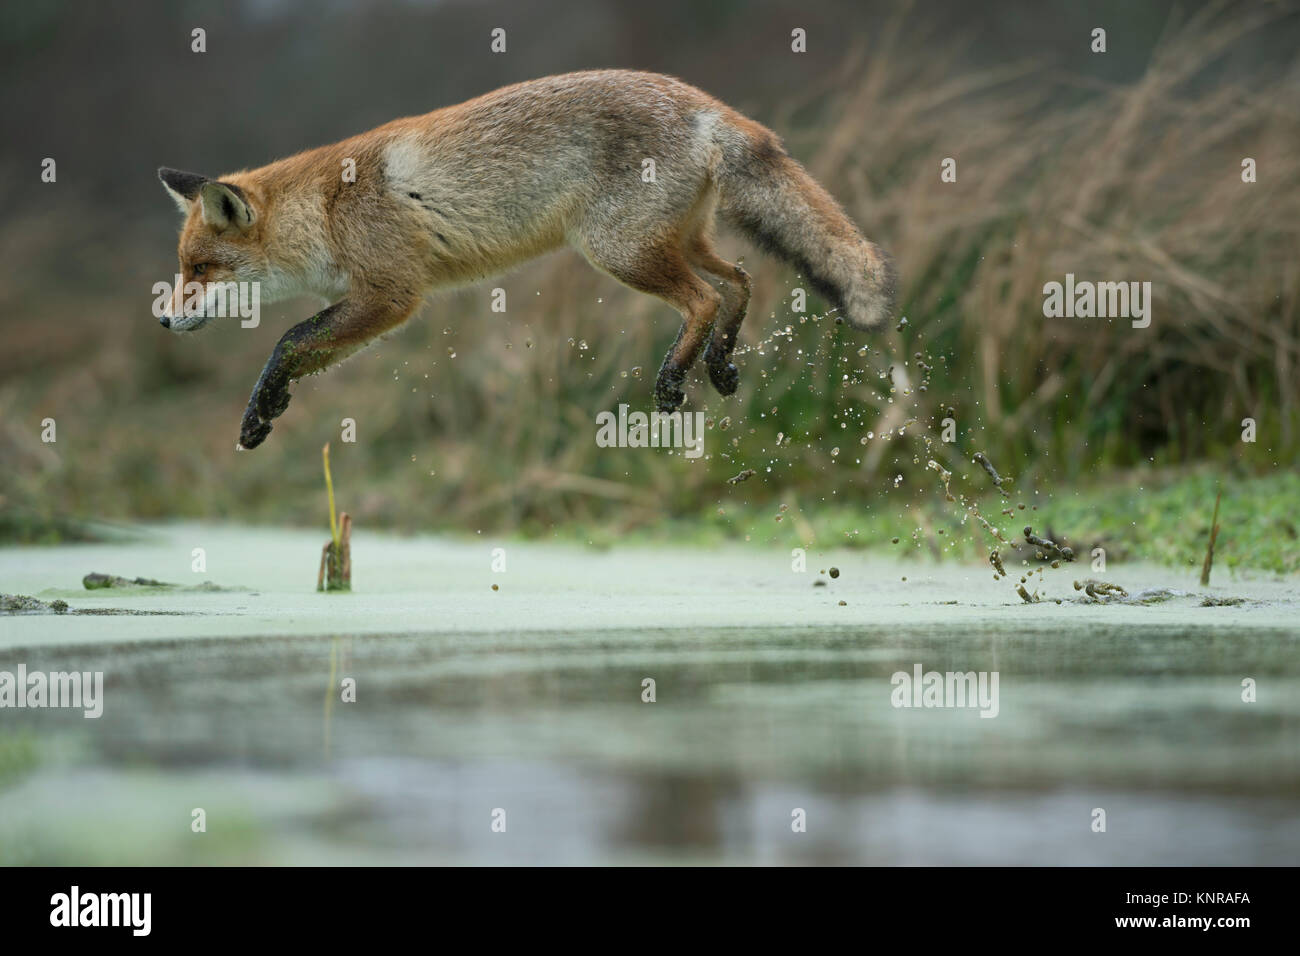 Red Fox / Rotfuchs ( Vulpes vulpes ), adulti in winterfur, saltando su un piccolo fiume in una palude, lungi jump, sembra divertente, wildife, l'Europa. Foto Stock